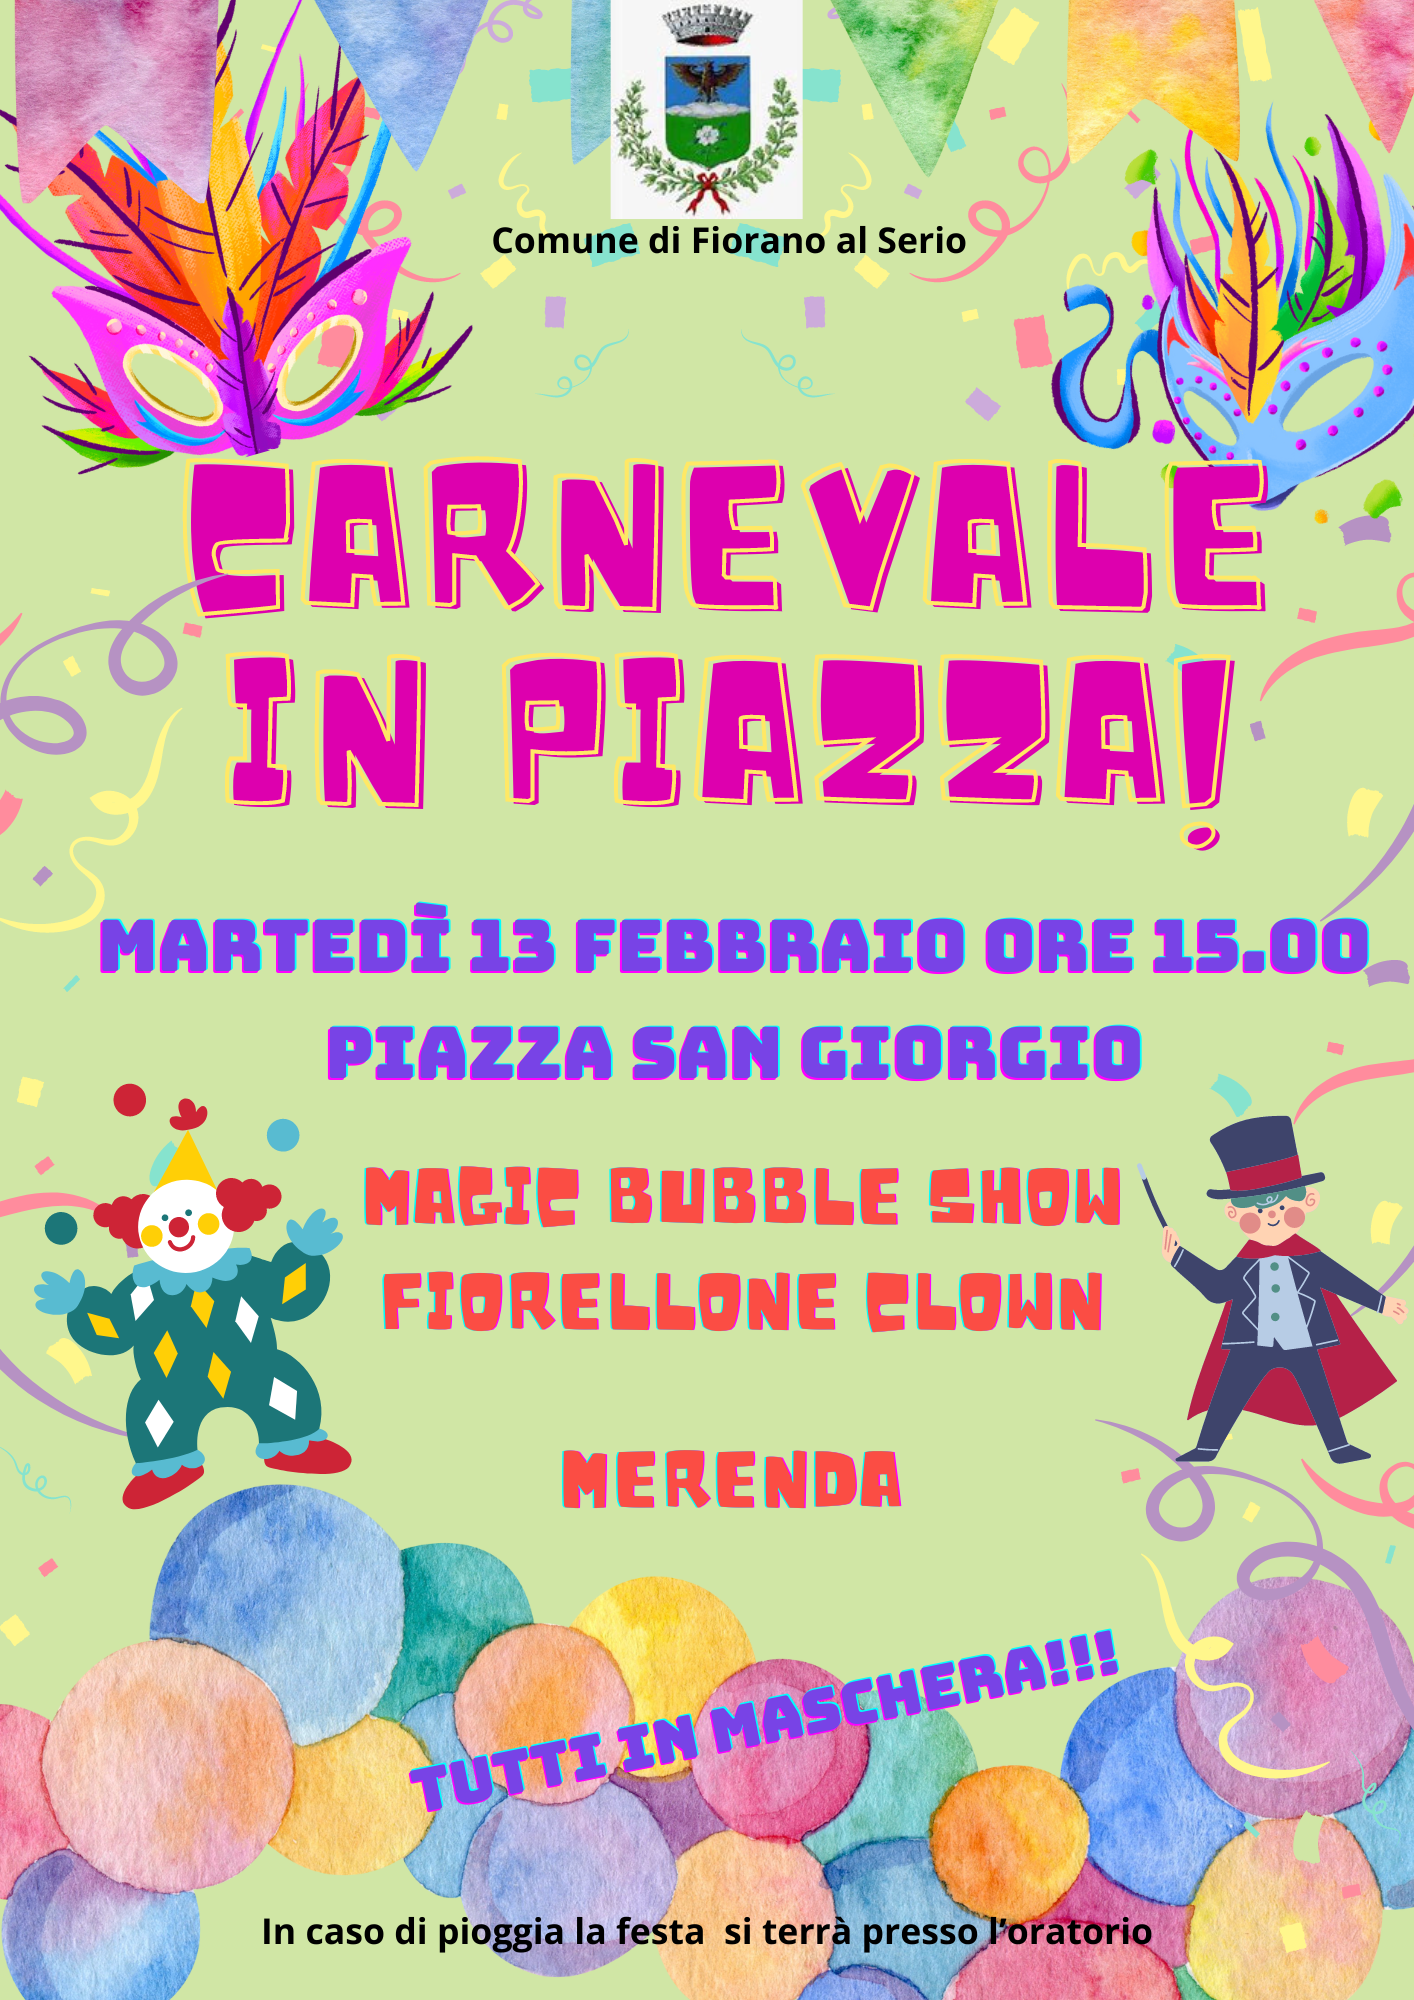 Martedì 13 Febbraio ore 15.00 Festa di Carnevale in Piazza San Giorgio